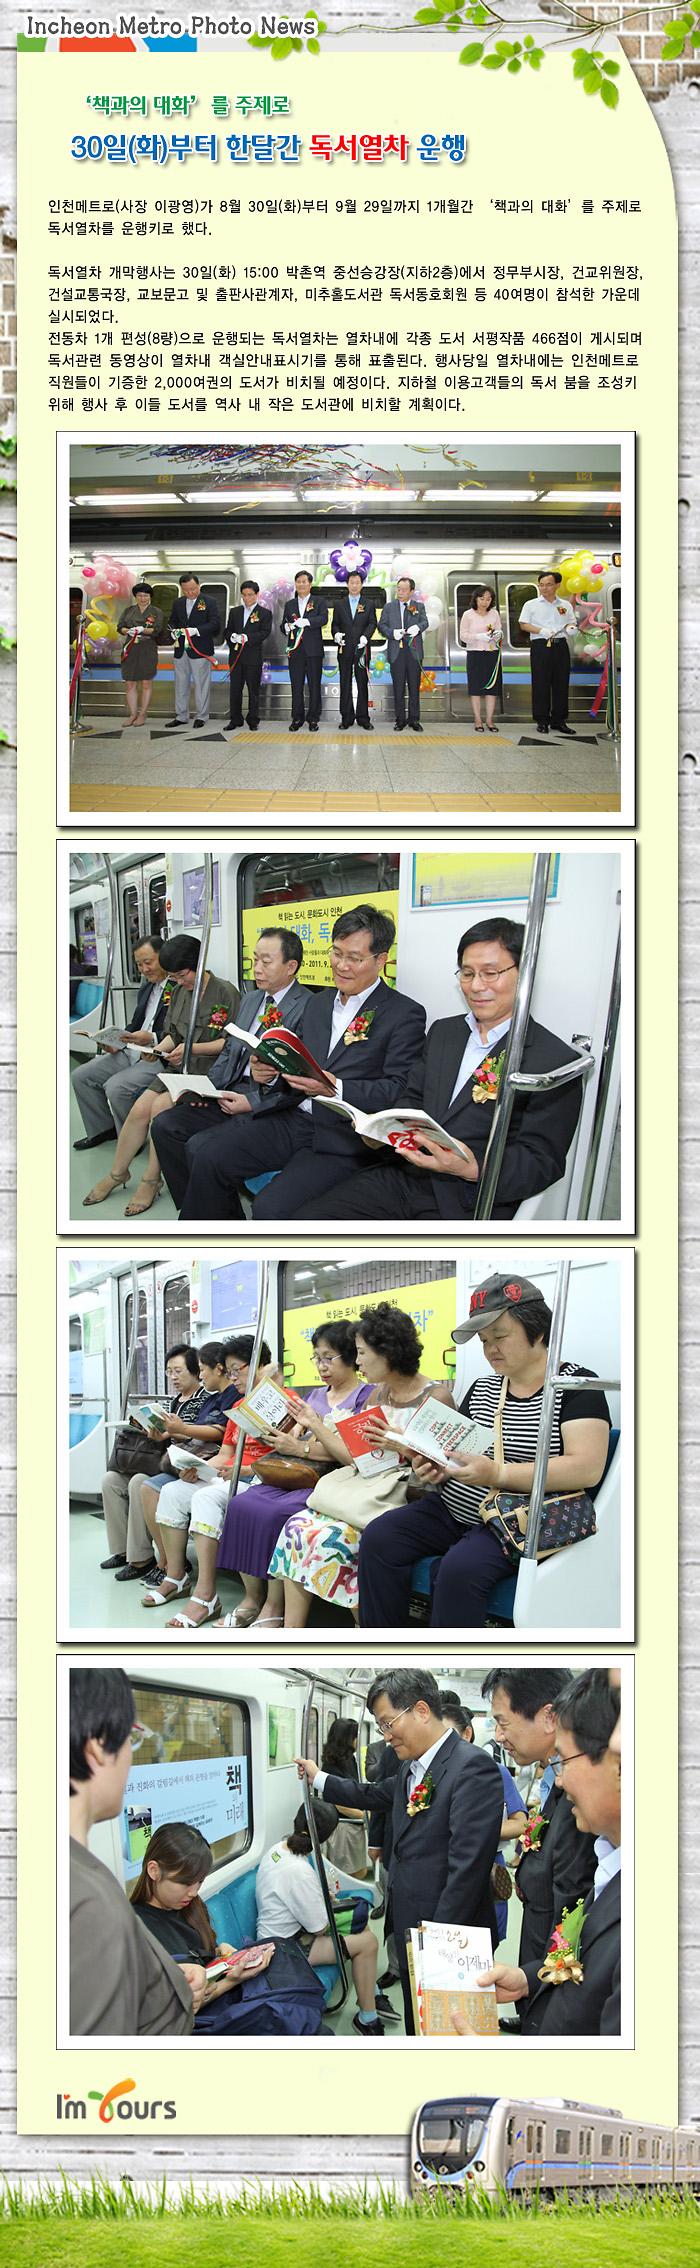 독서 열차 사진